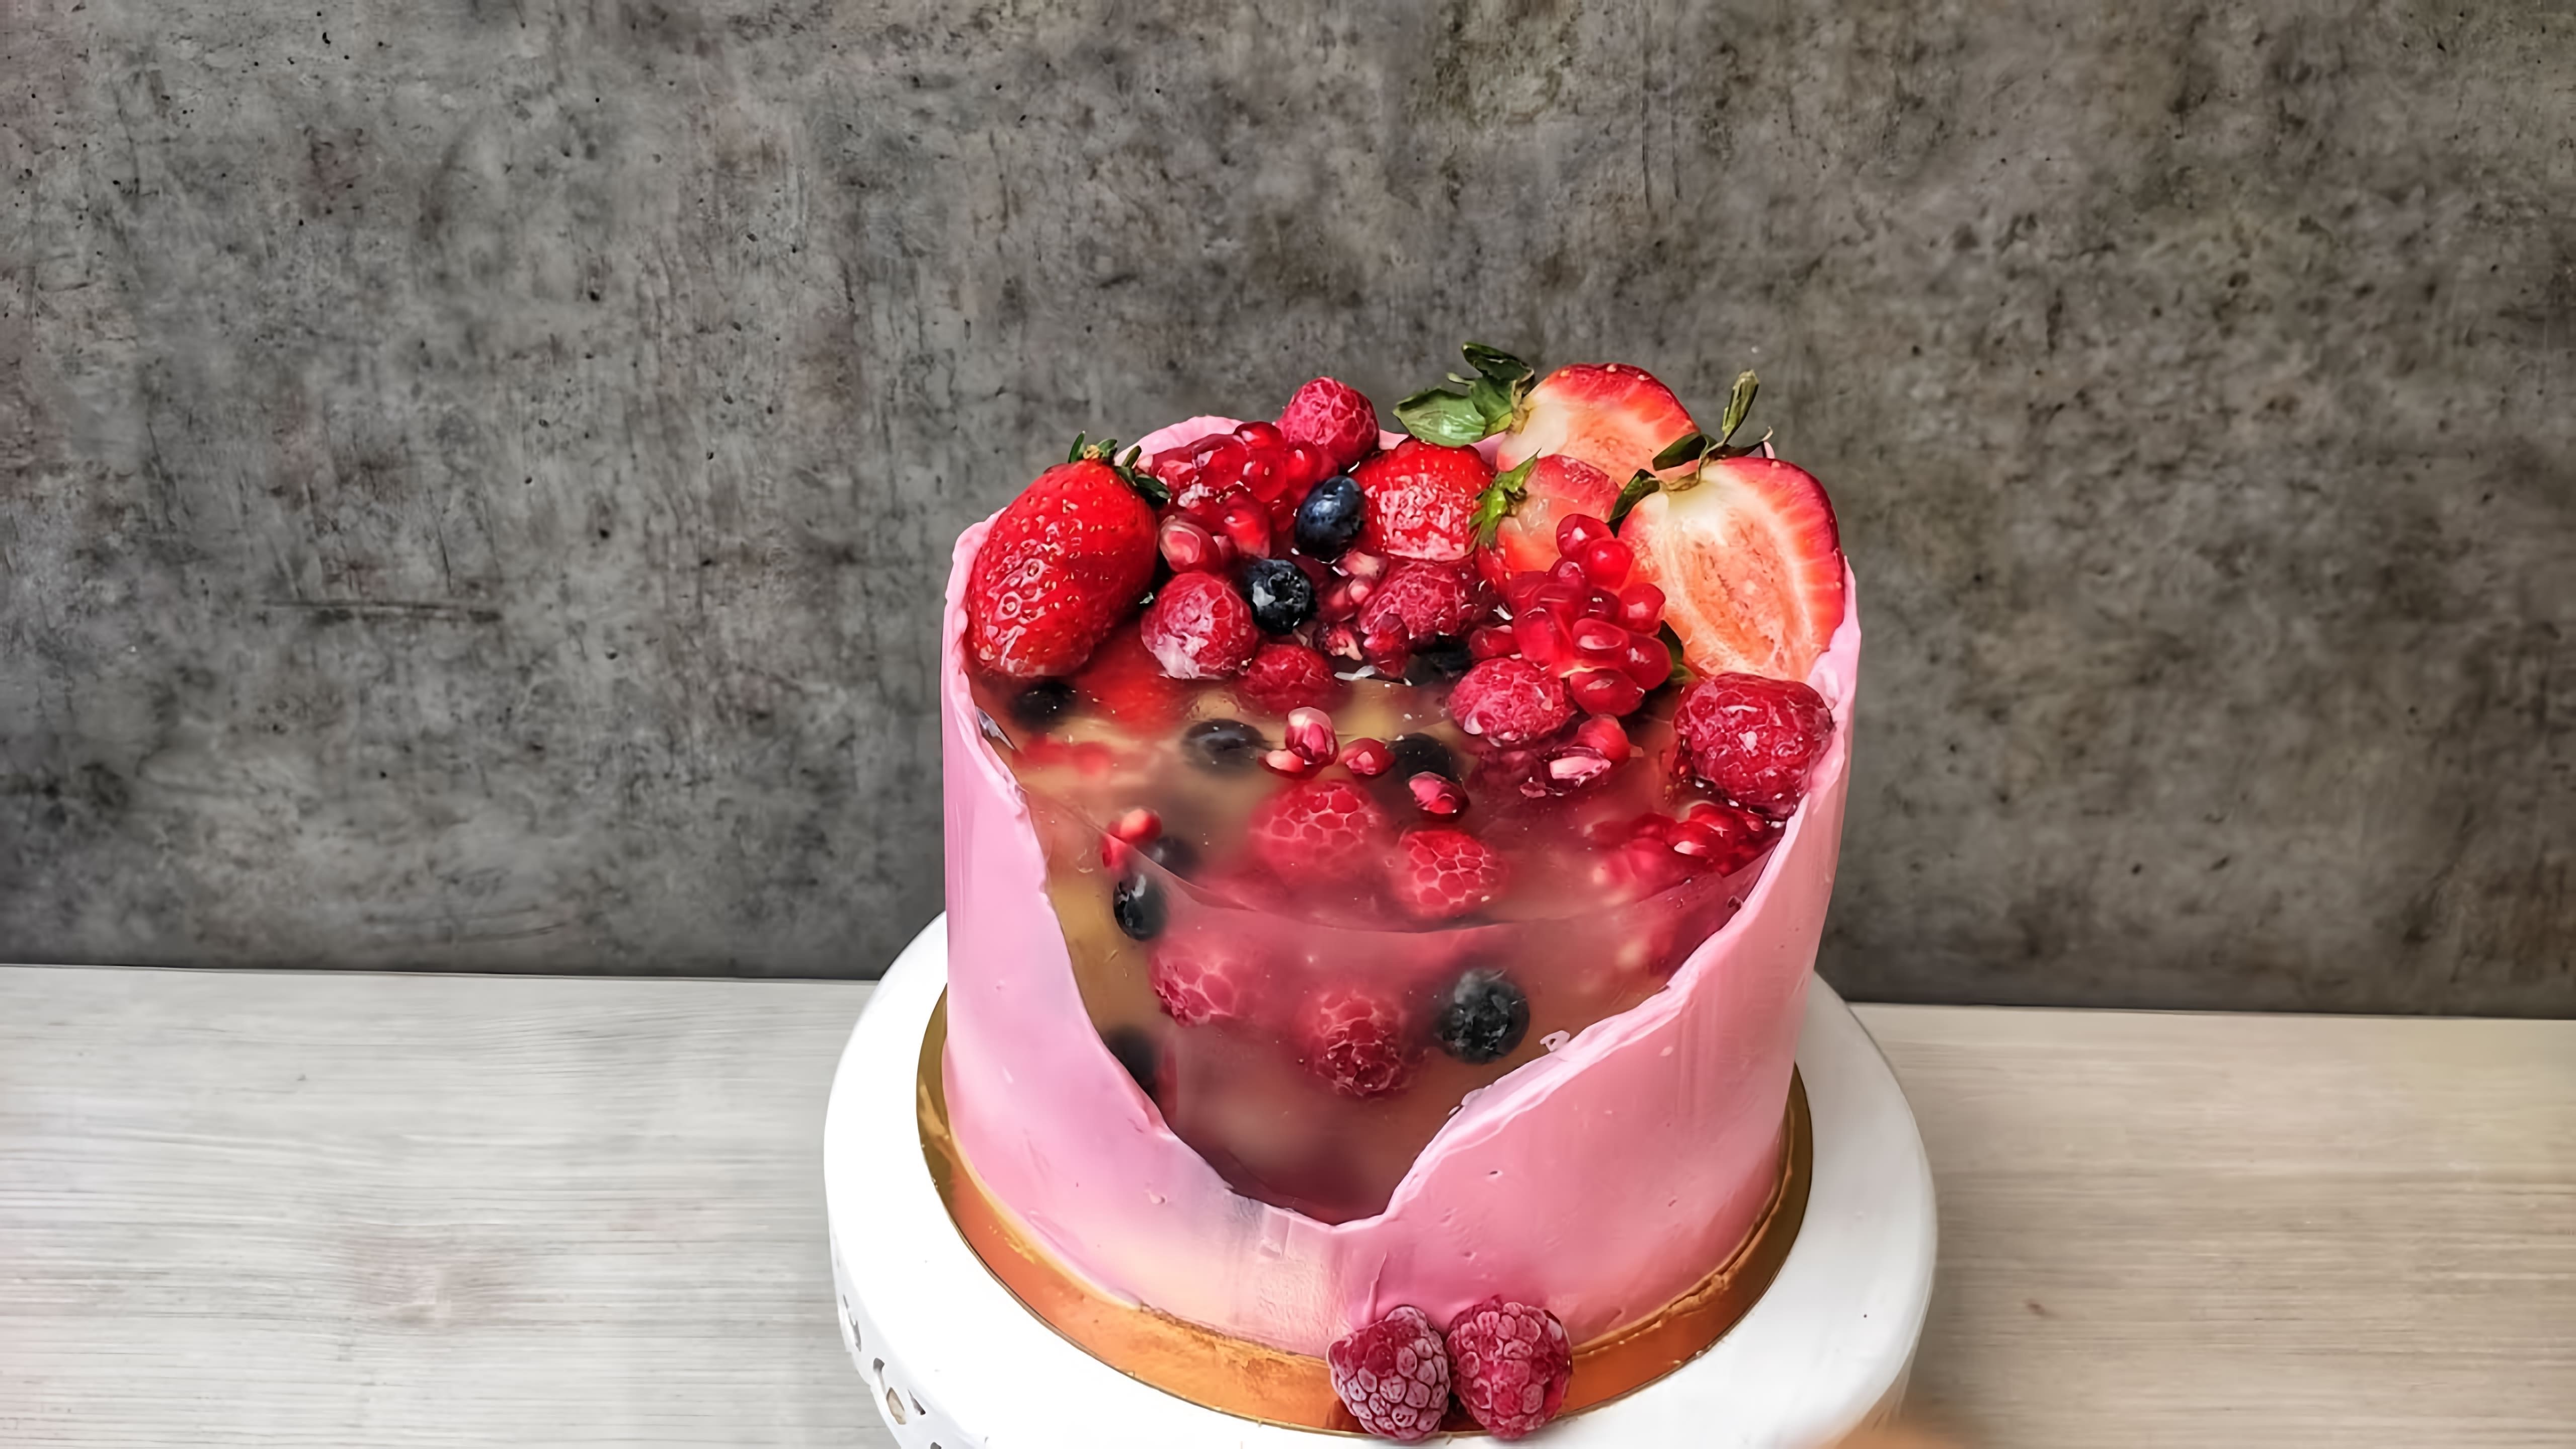 В этом видео демонстрируется процесс создания торта с ягодным желе